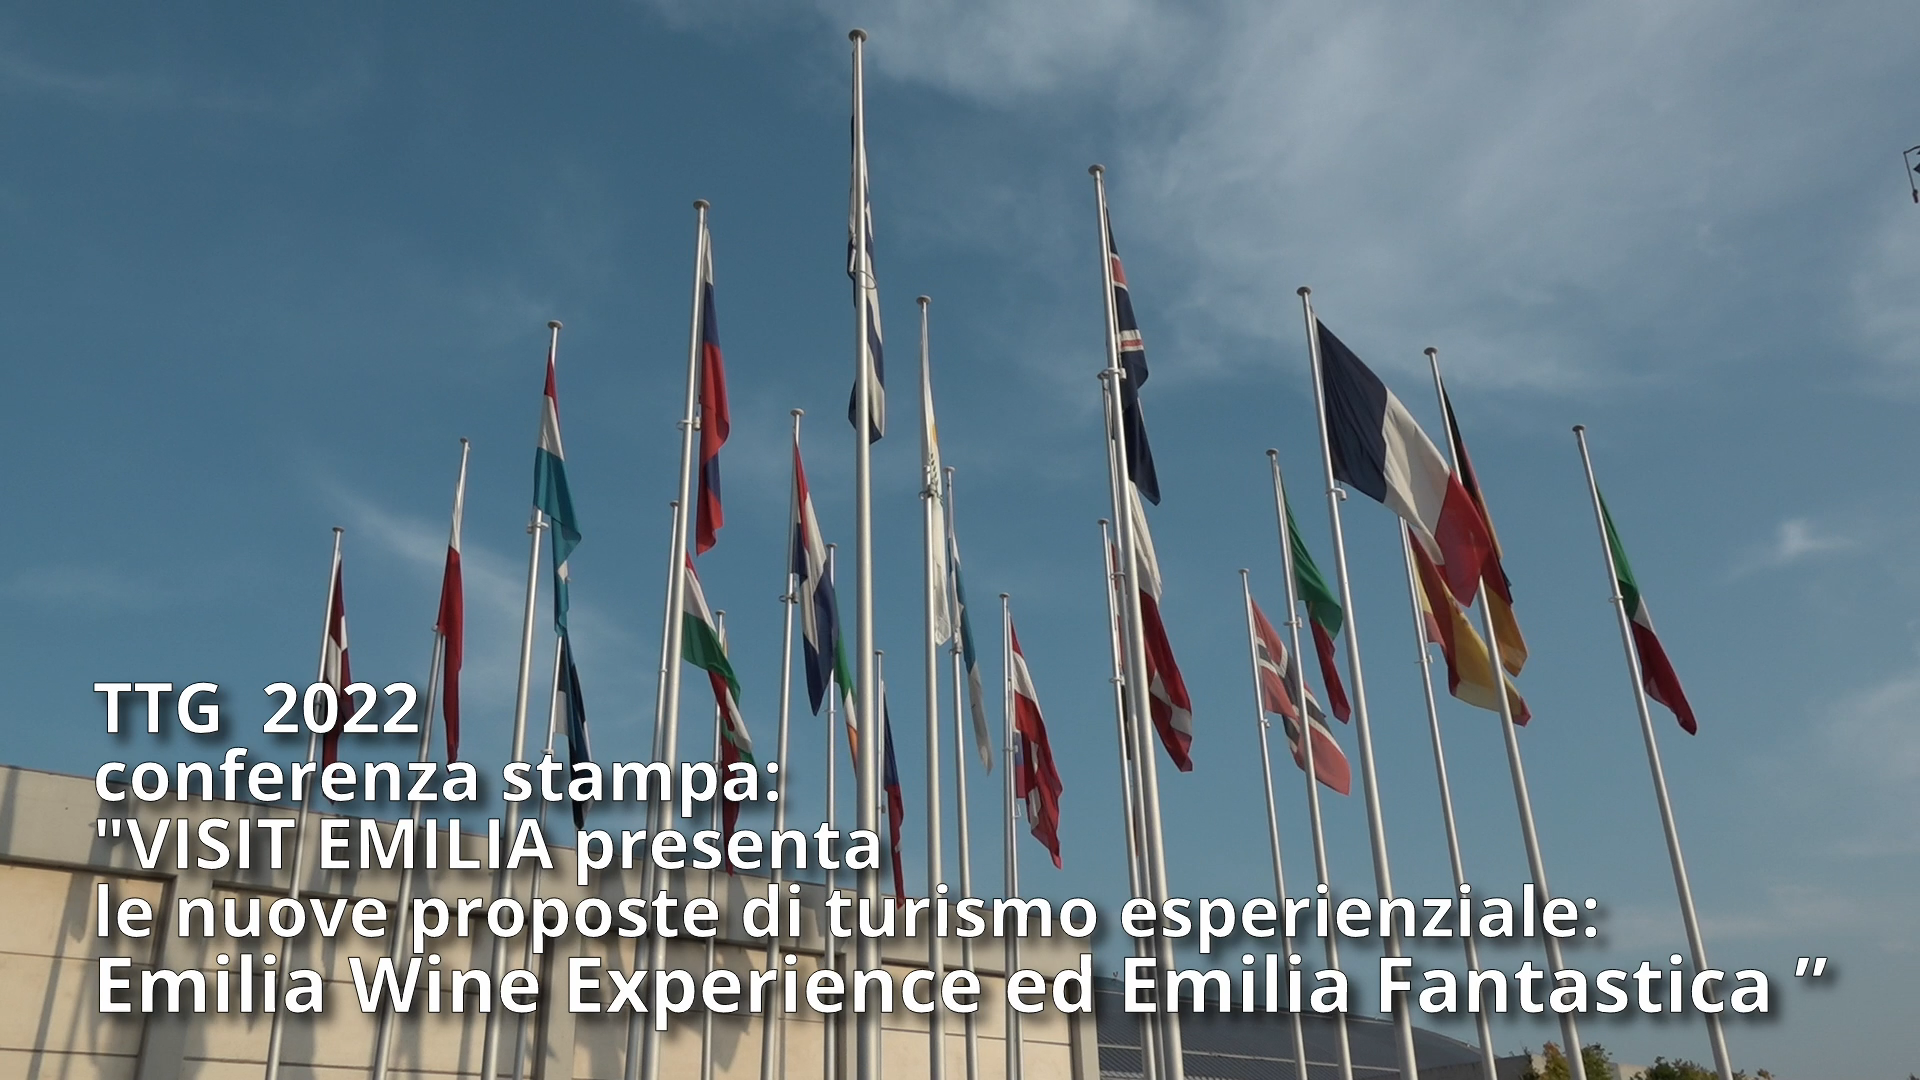 TTG 2022: Conferenza Stampa “VISIT EMILIA presenta le nuove proposte di turismo esperienziale”